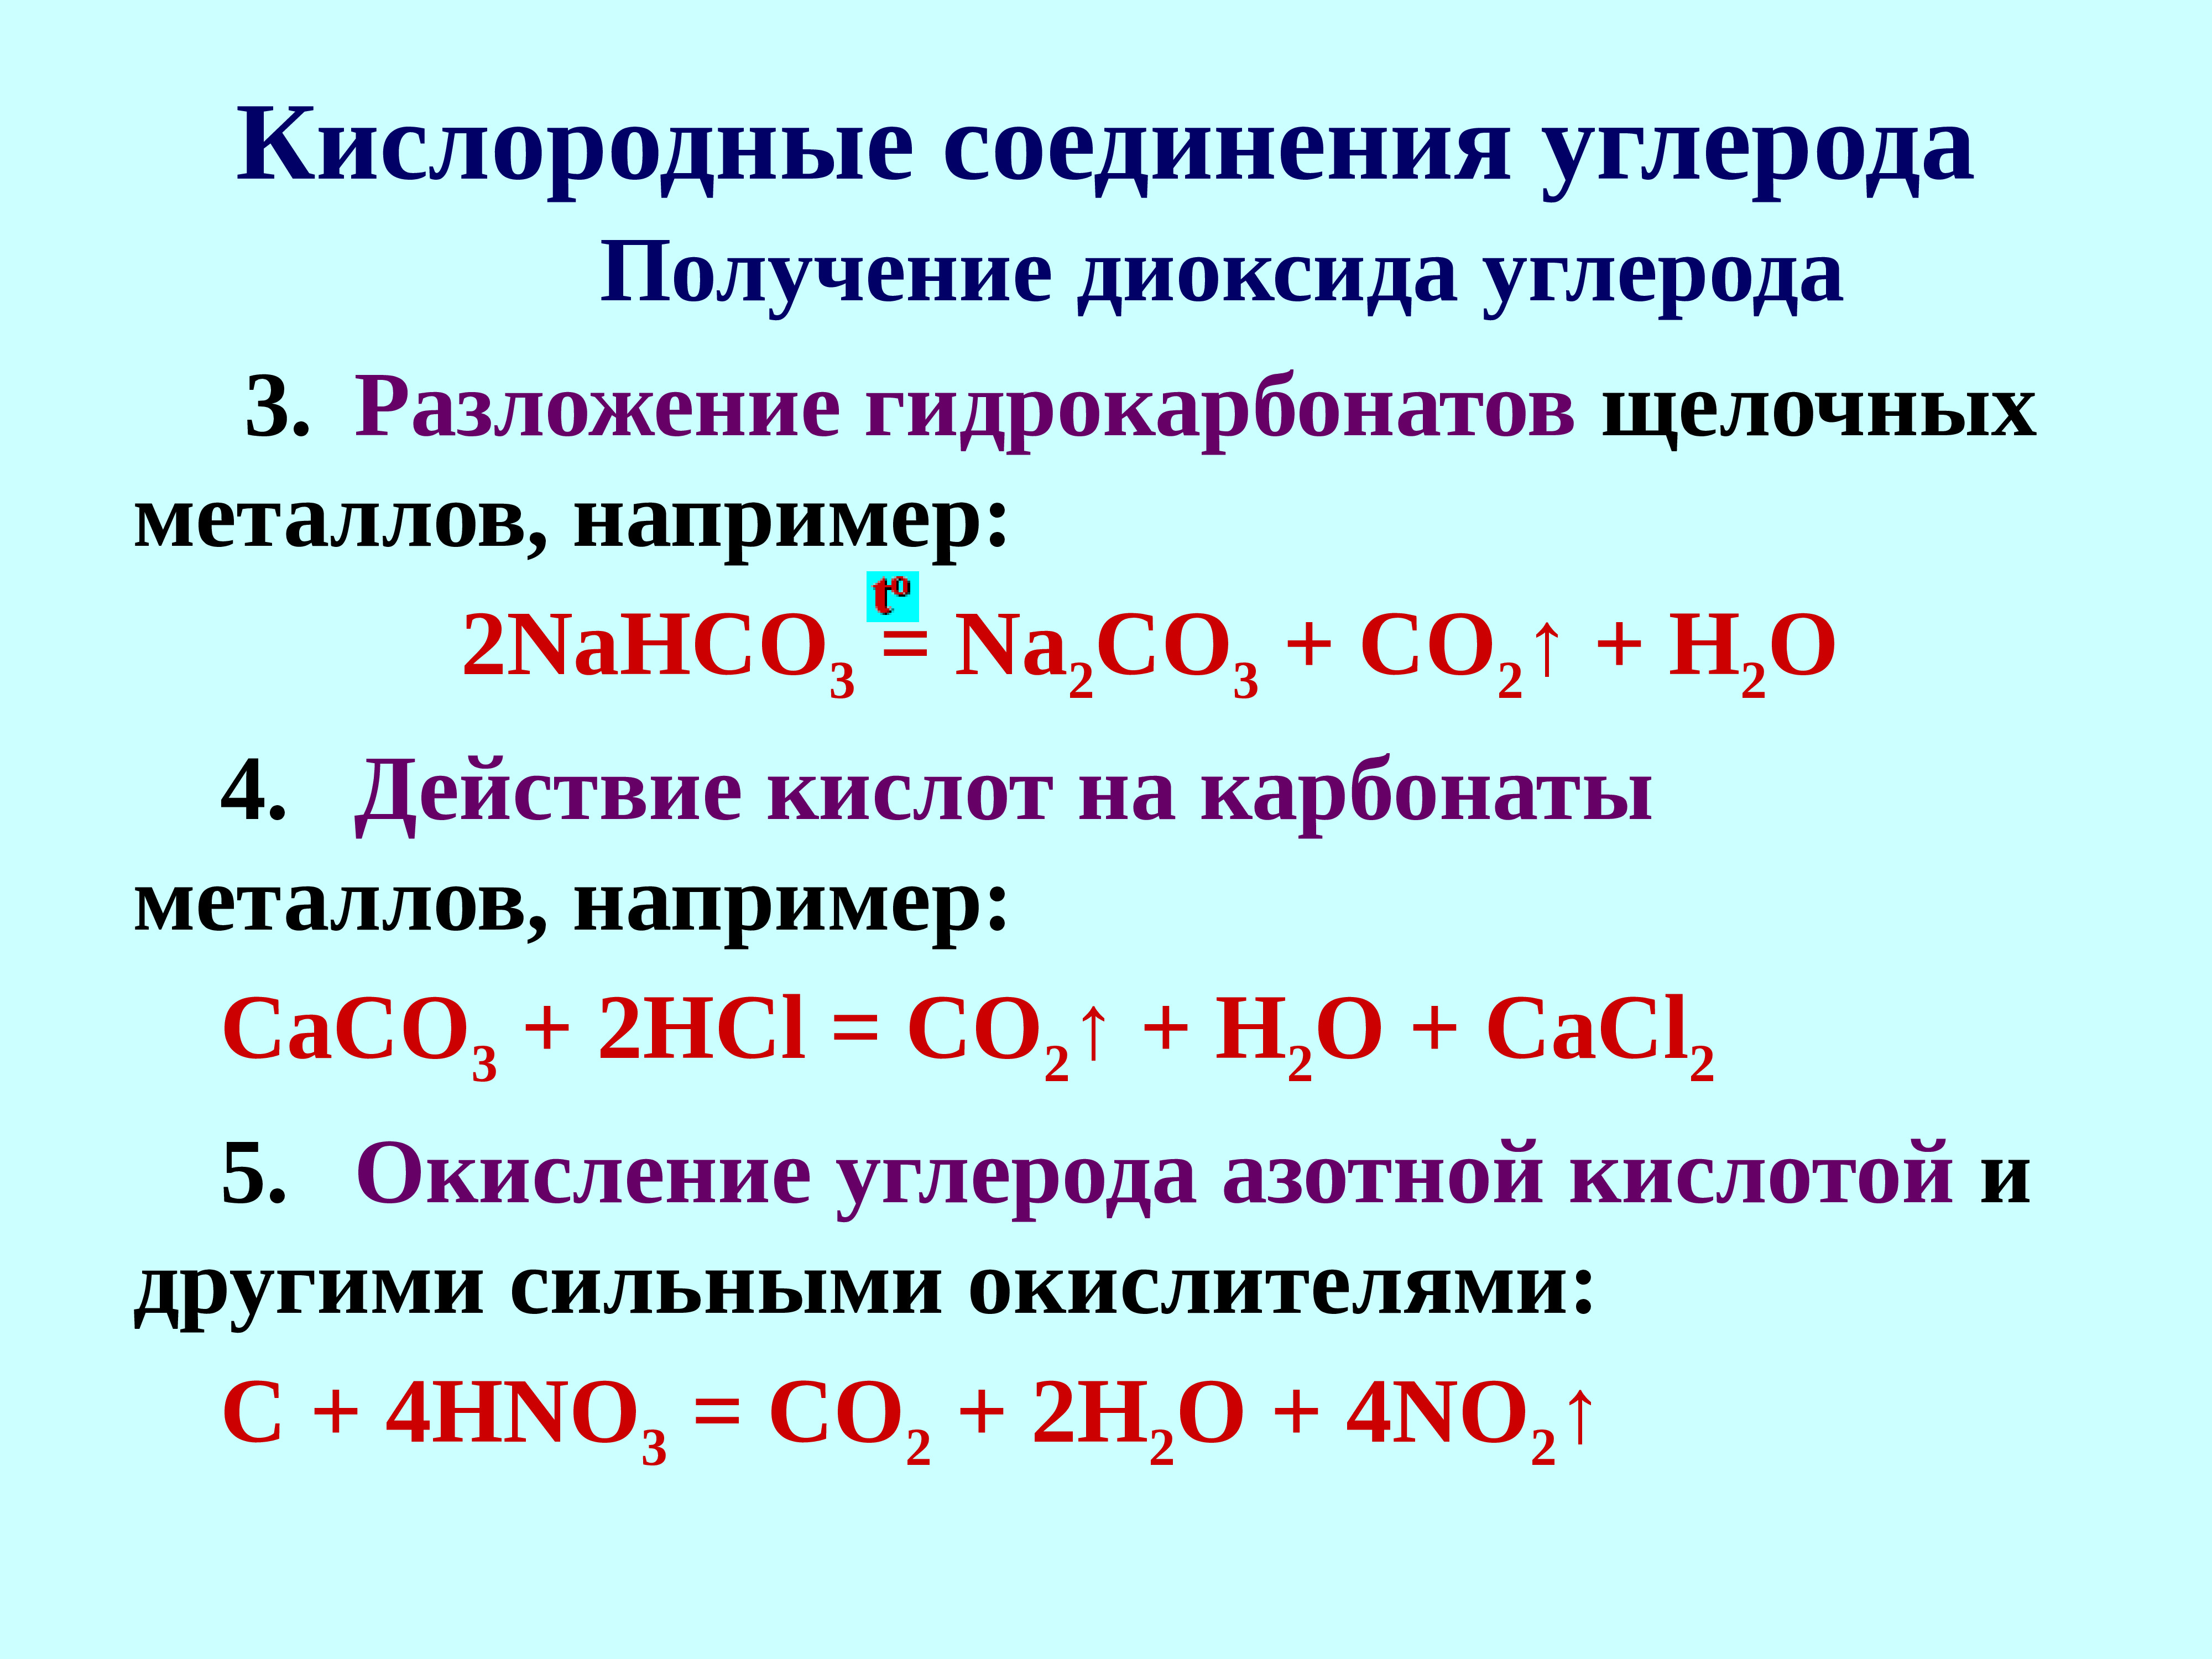 Самостоятельная работа соединения углерода. Кислородные соединения углерода 9 класс. Кислородные соединения углерода 9 класс таблица. Соединения углерода с кислородом. Химические соединения углерода.